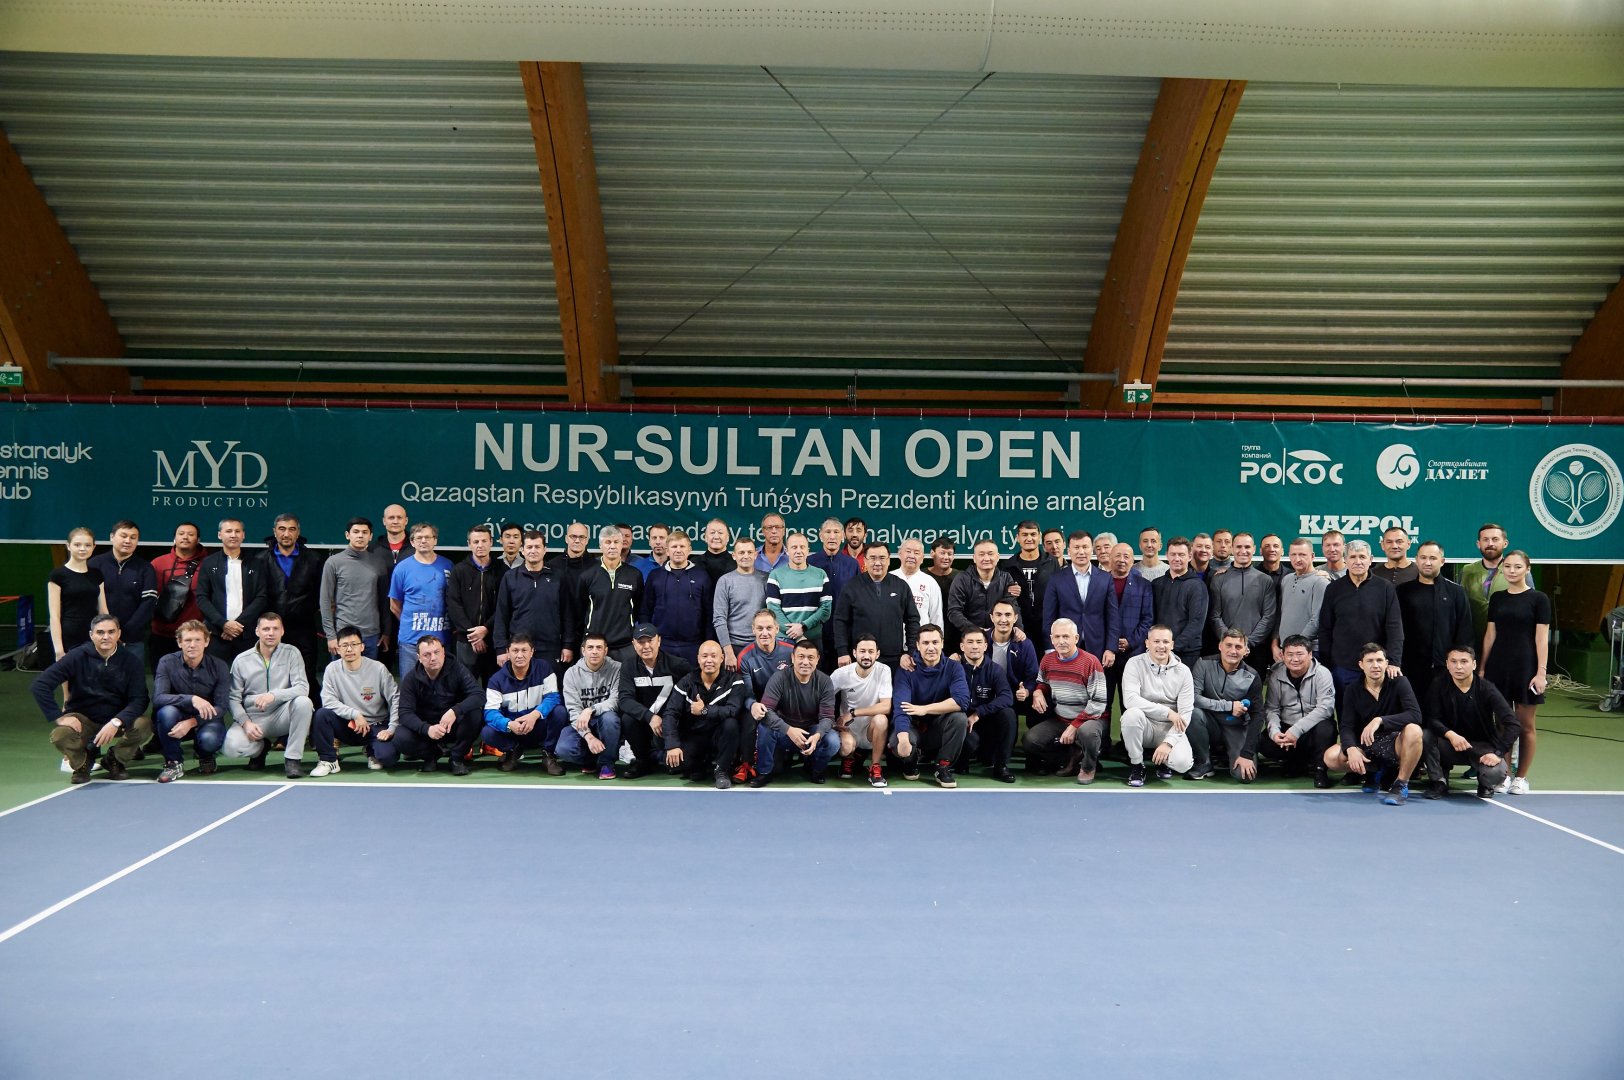 Стартовал международный турнир по теннису среди любителей Nur-Sultan Open - новости тенниса | Tengrinews